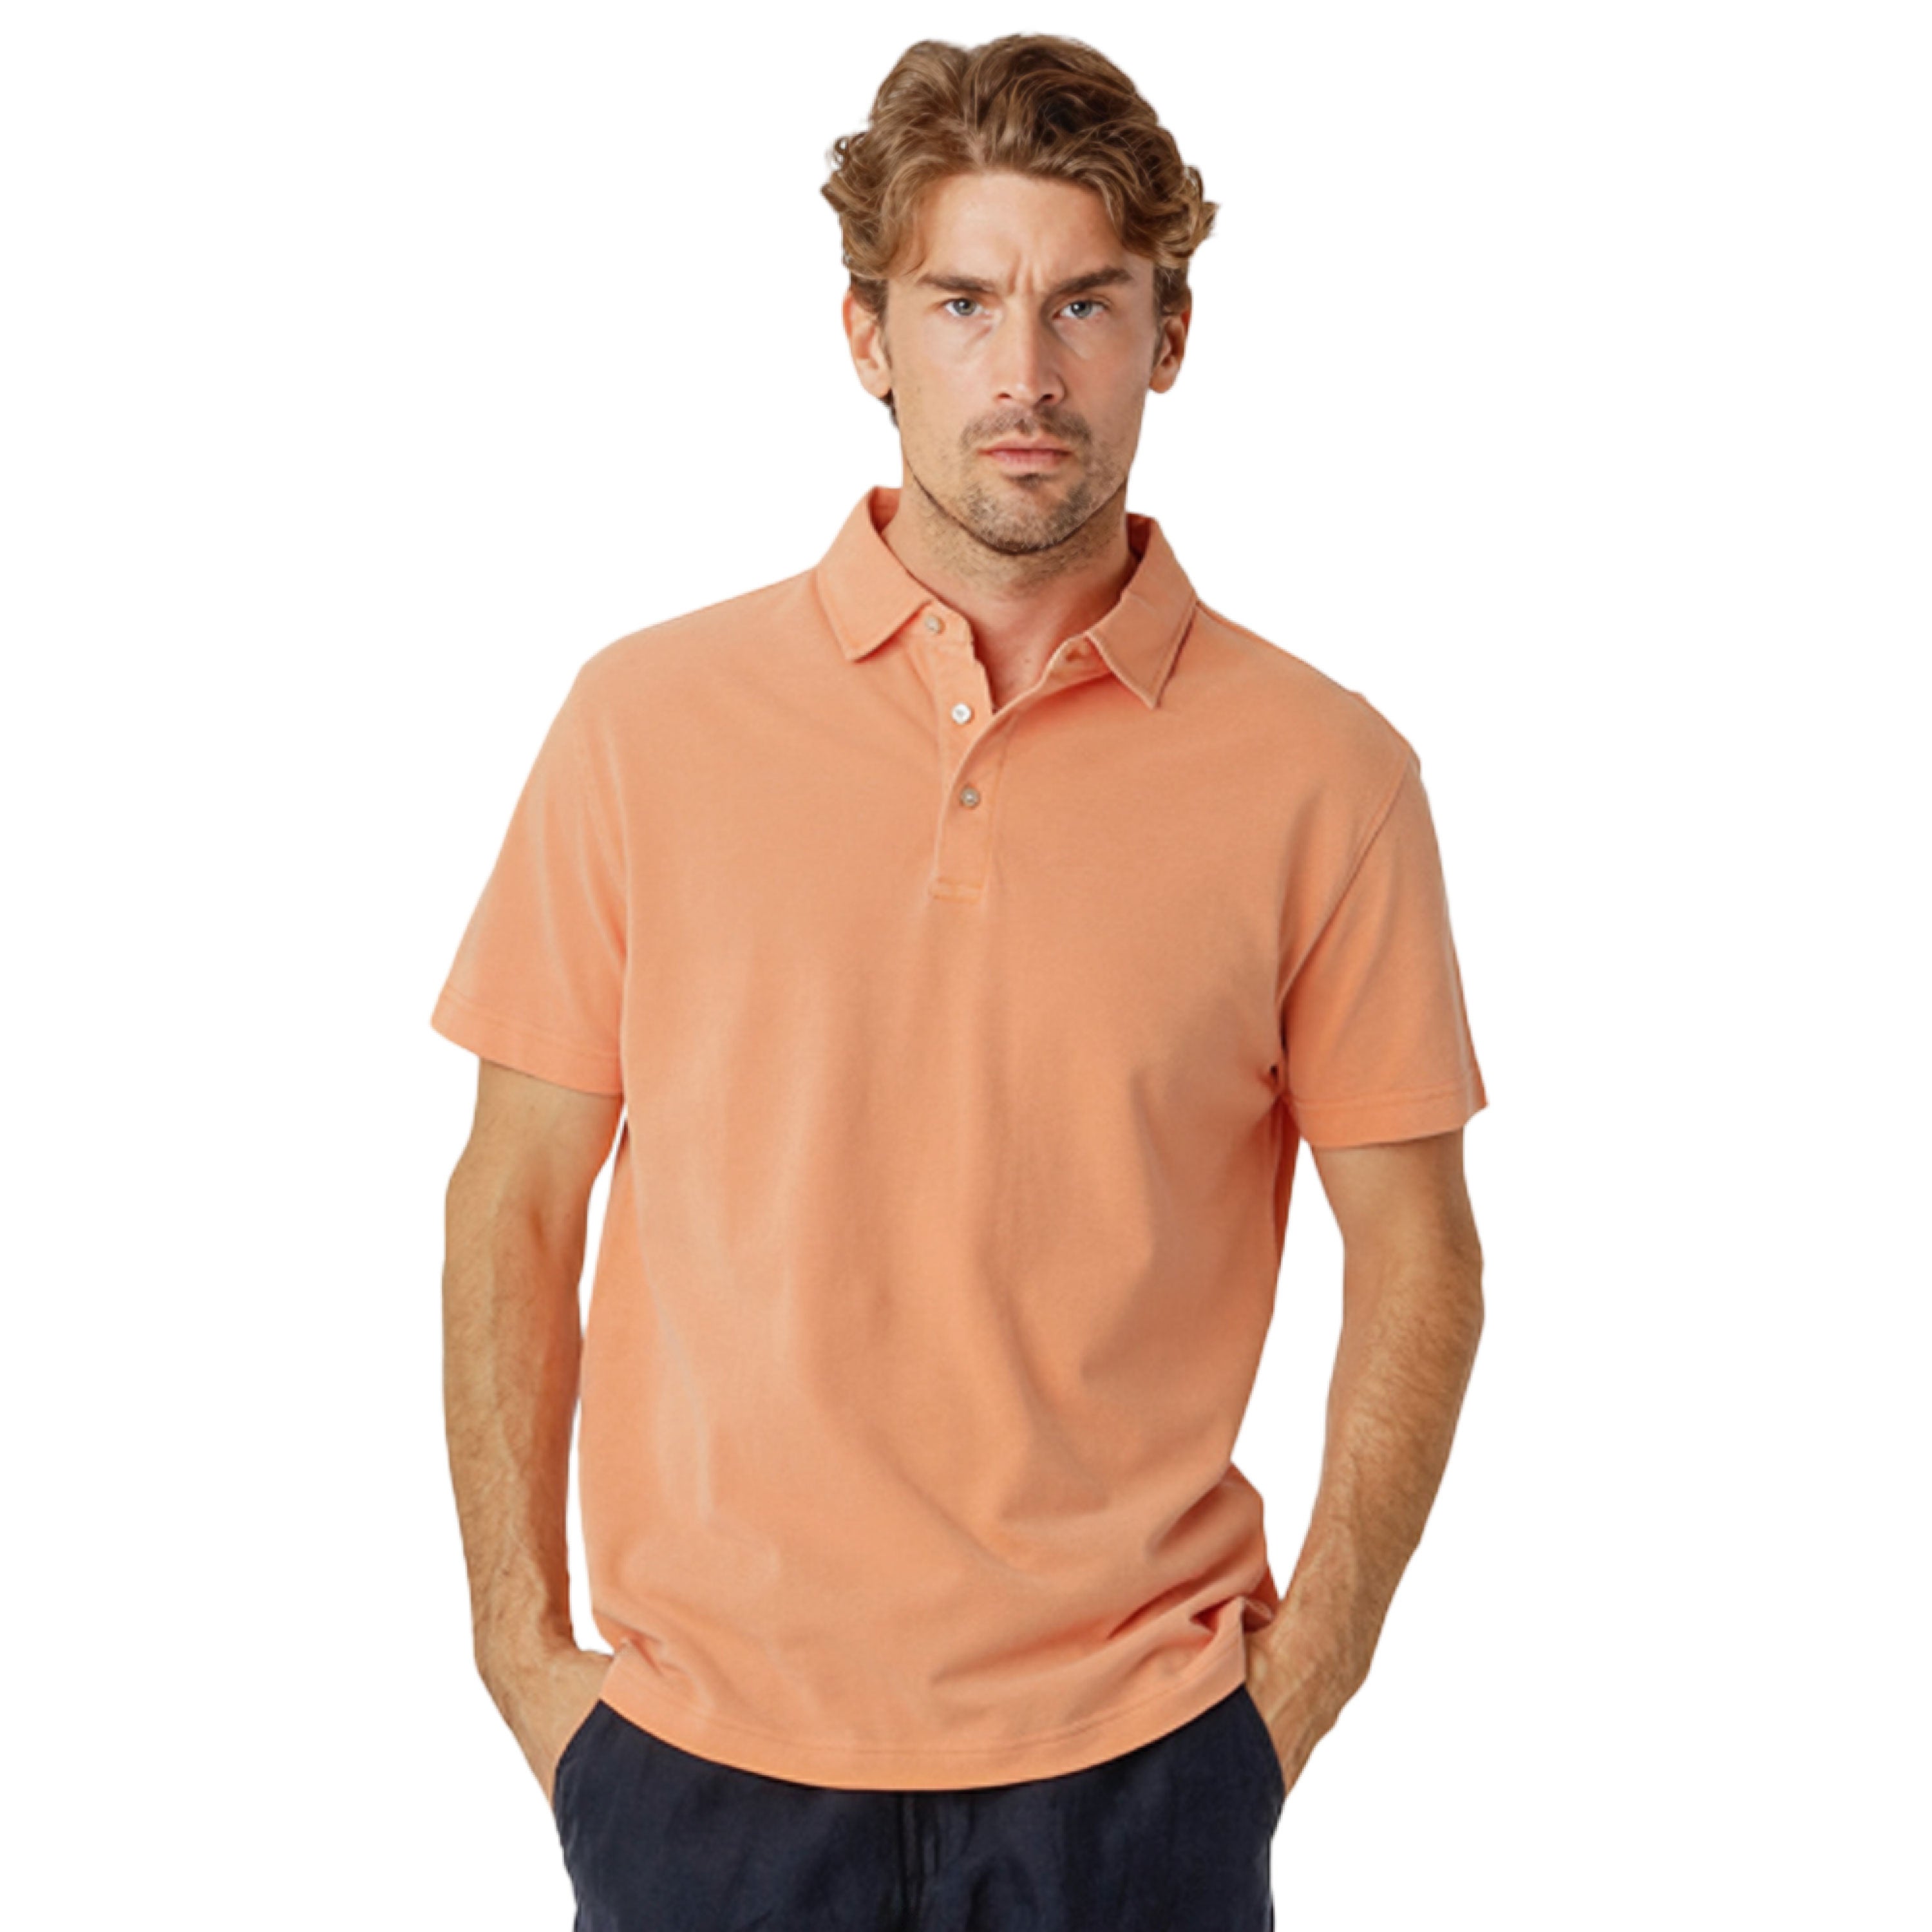 Apricot Polo Shirt